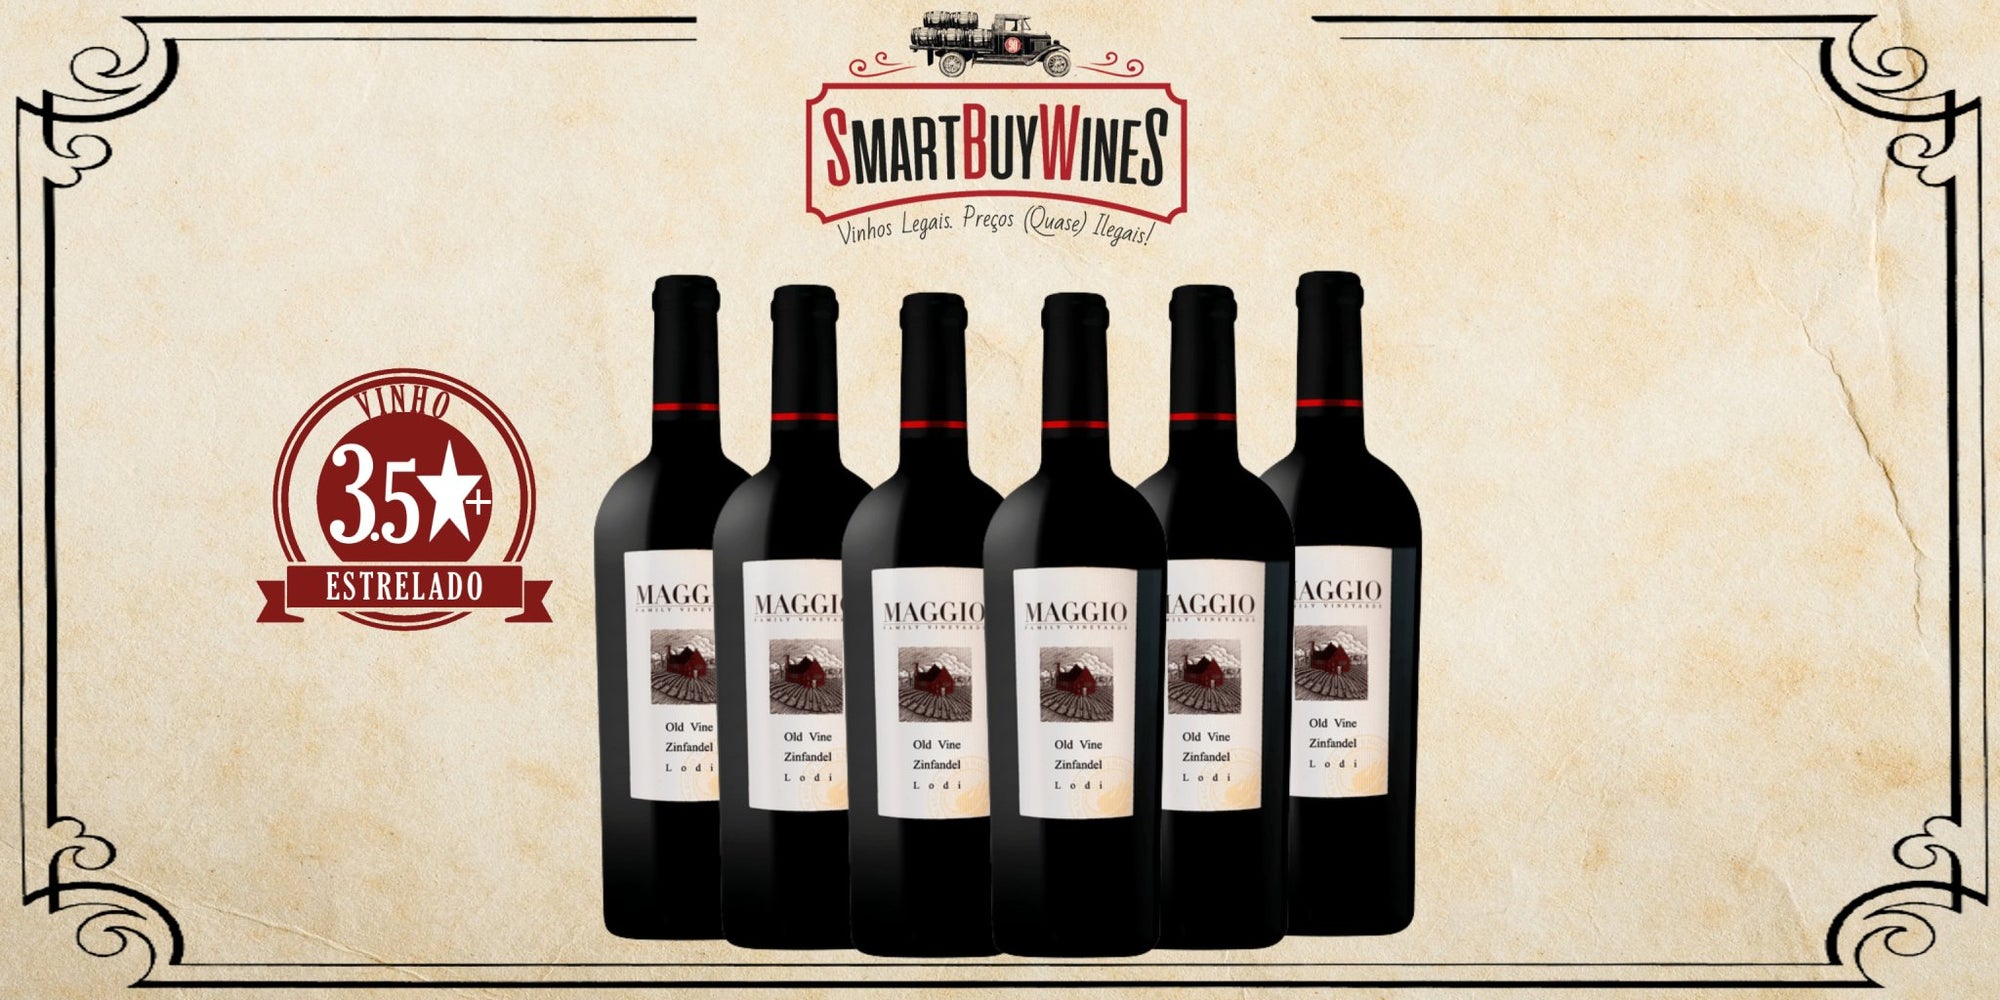 SMARTBOX 6 garrafas - Maggio Old Vines Zinfandel, Lodi, California 2017 - SmartBuyWines.com.br